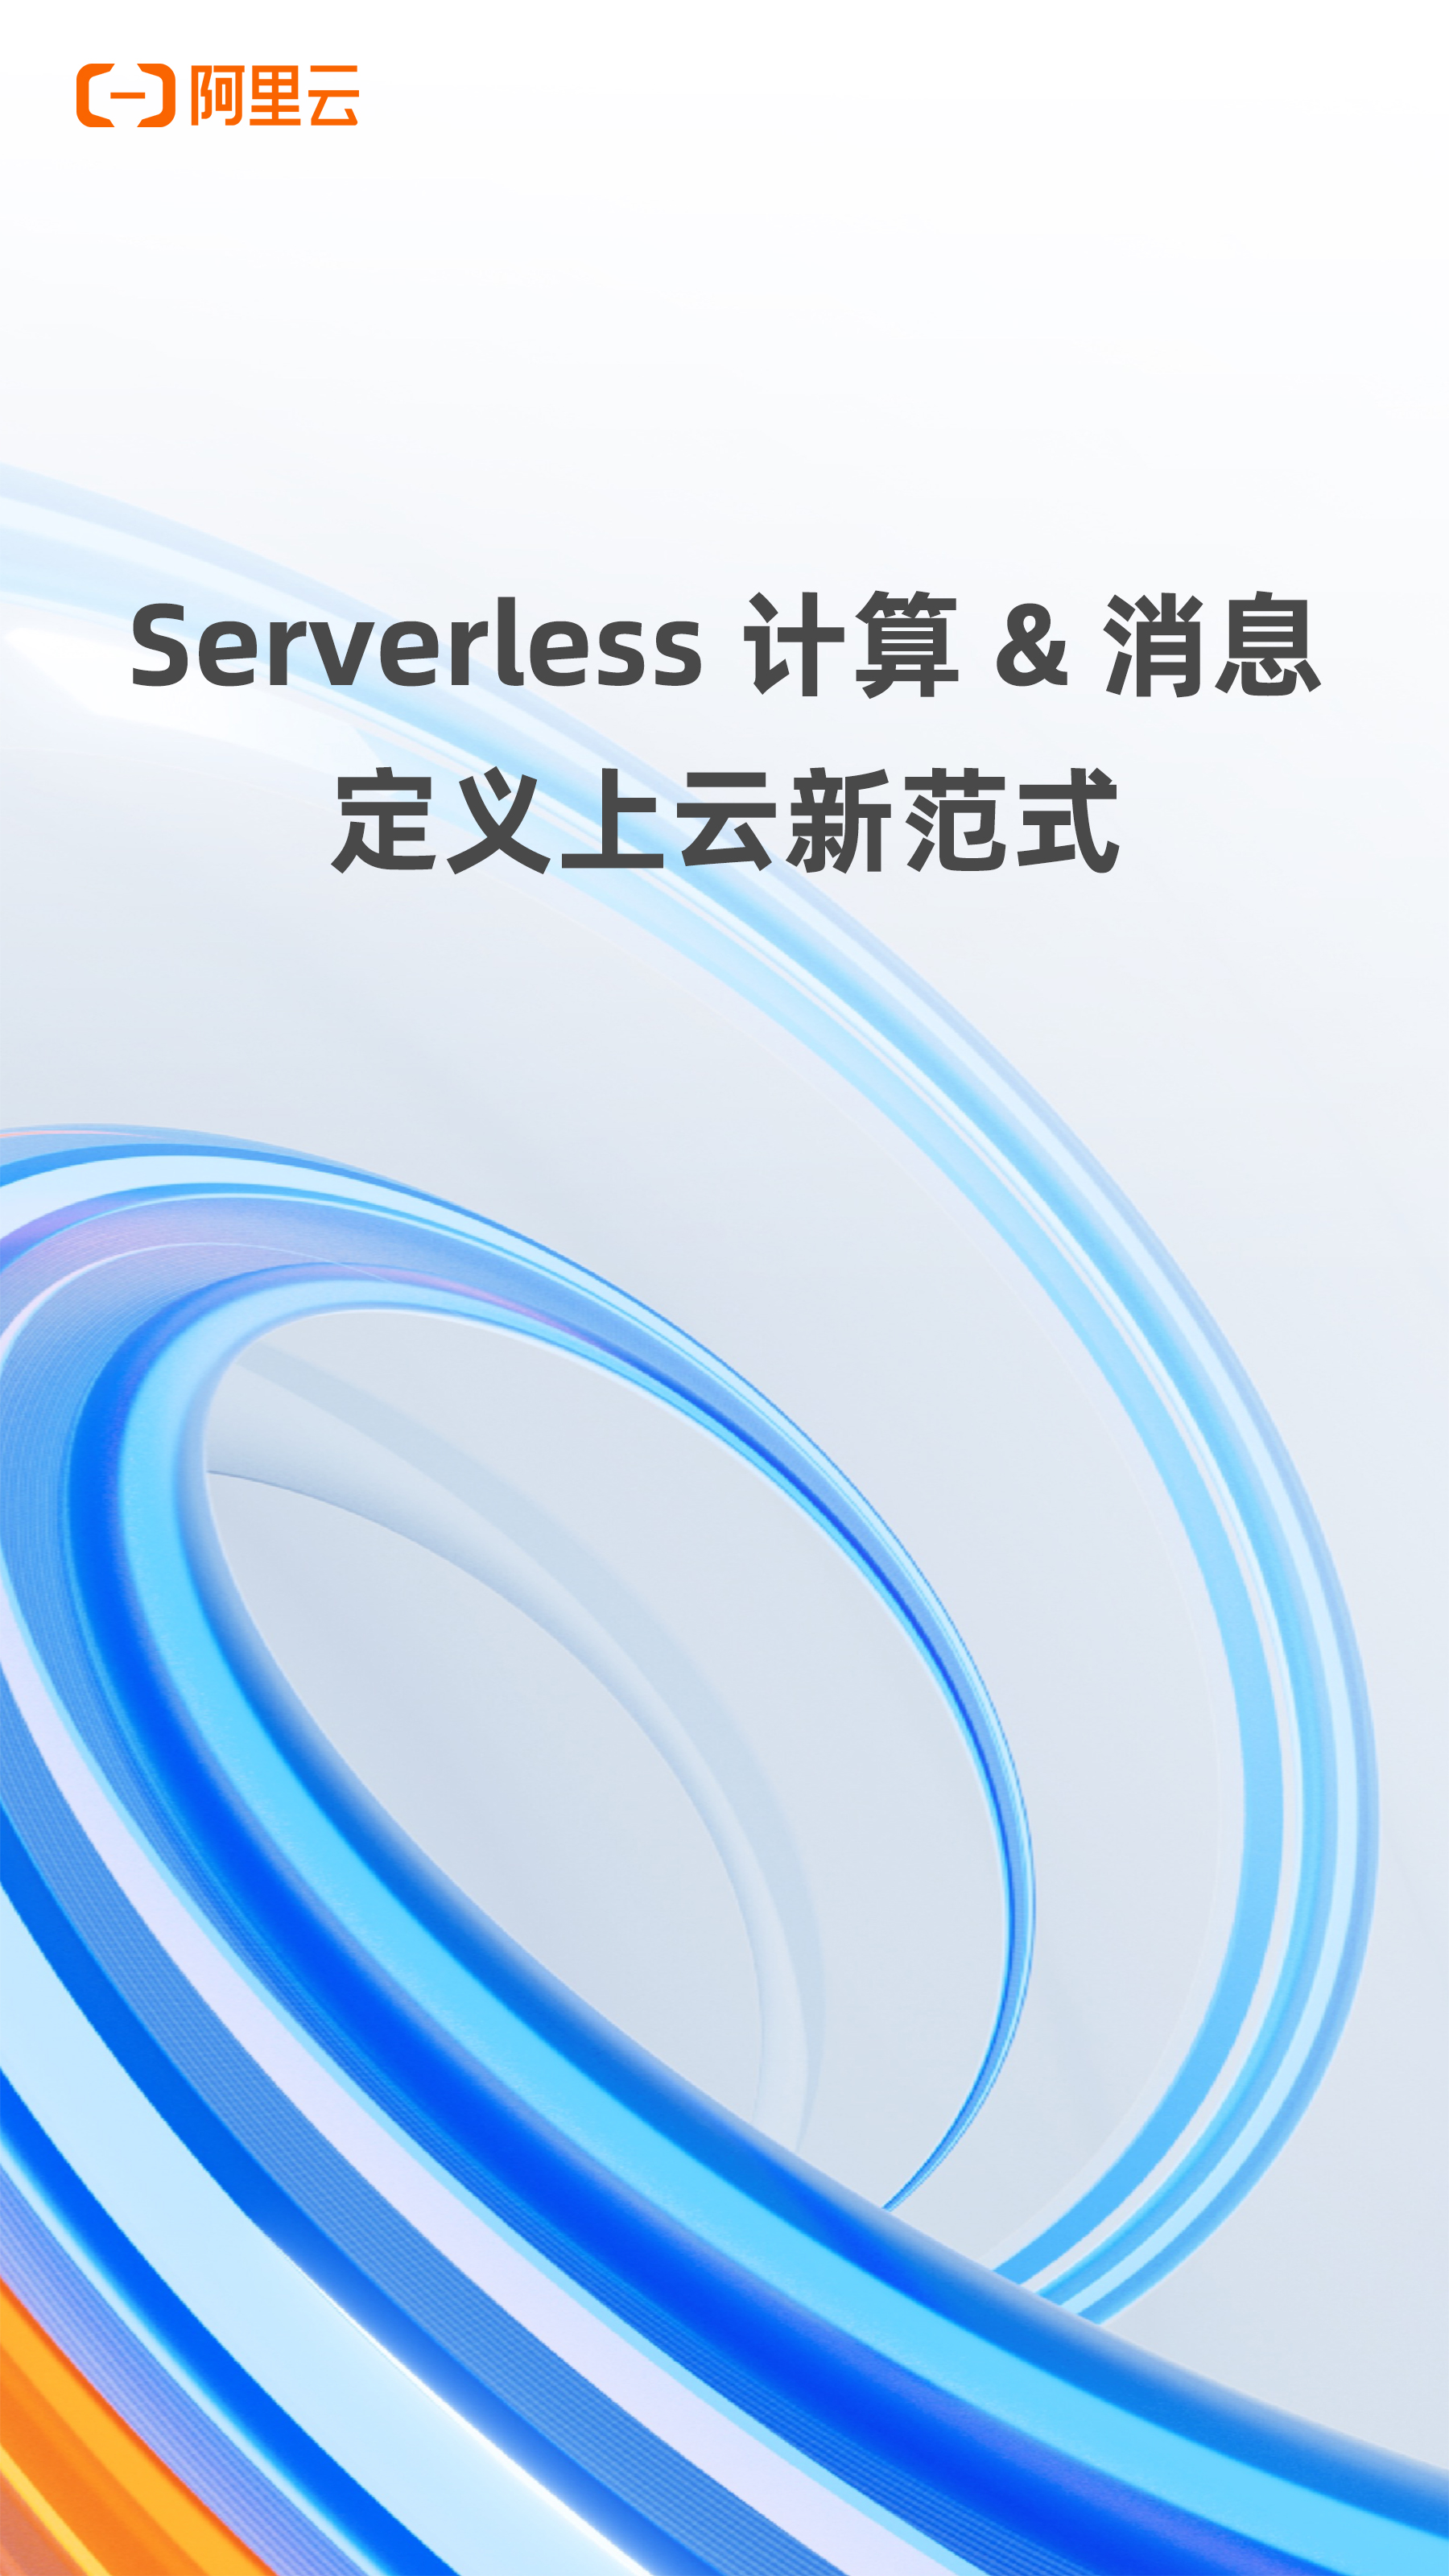 Serverless 计算&消息 定义上云新范式